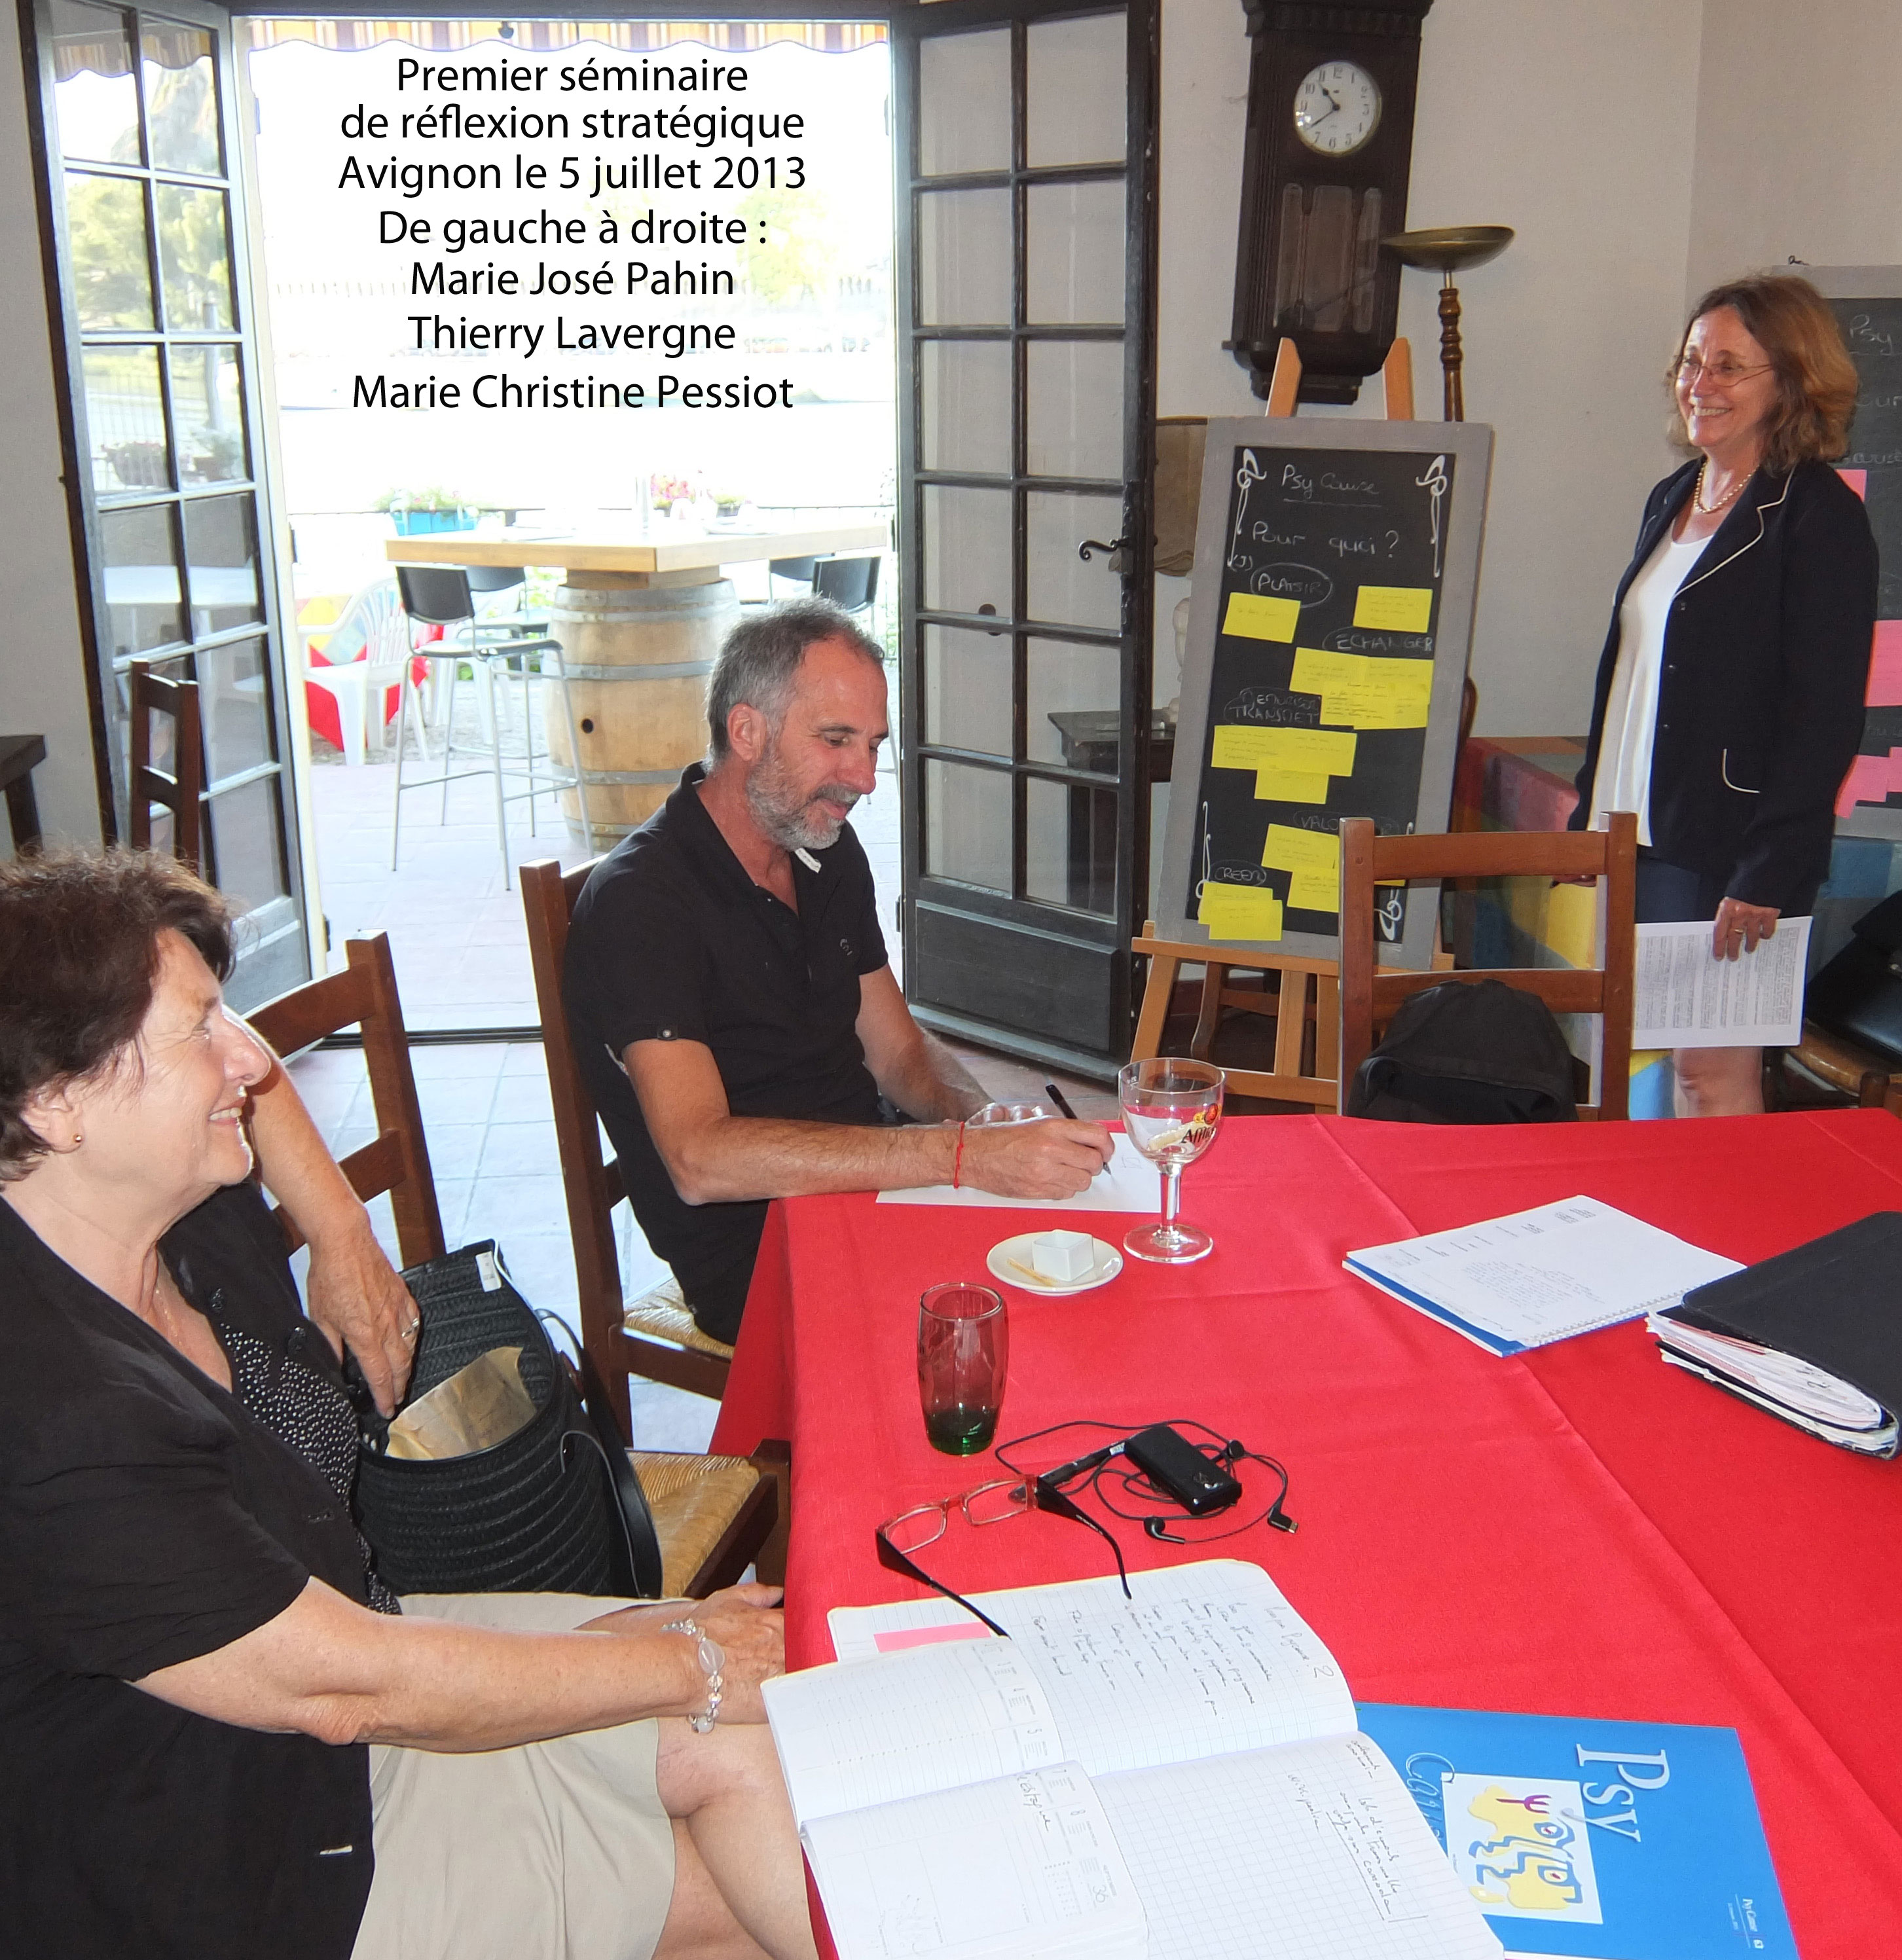 Premier séminaire de réflexion stratégique, à Avignon le 5 juillet 2013